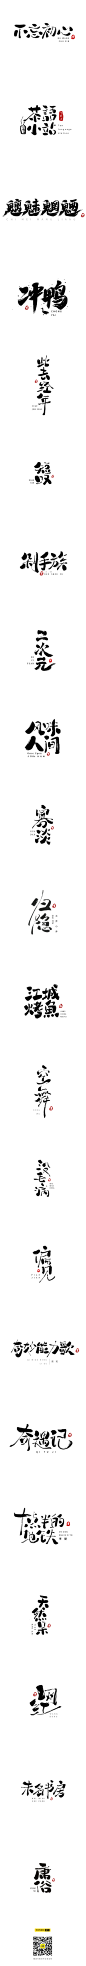 一些字体练习-字体传奇网-中国首个字体品牌设计师交流网